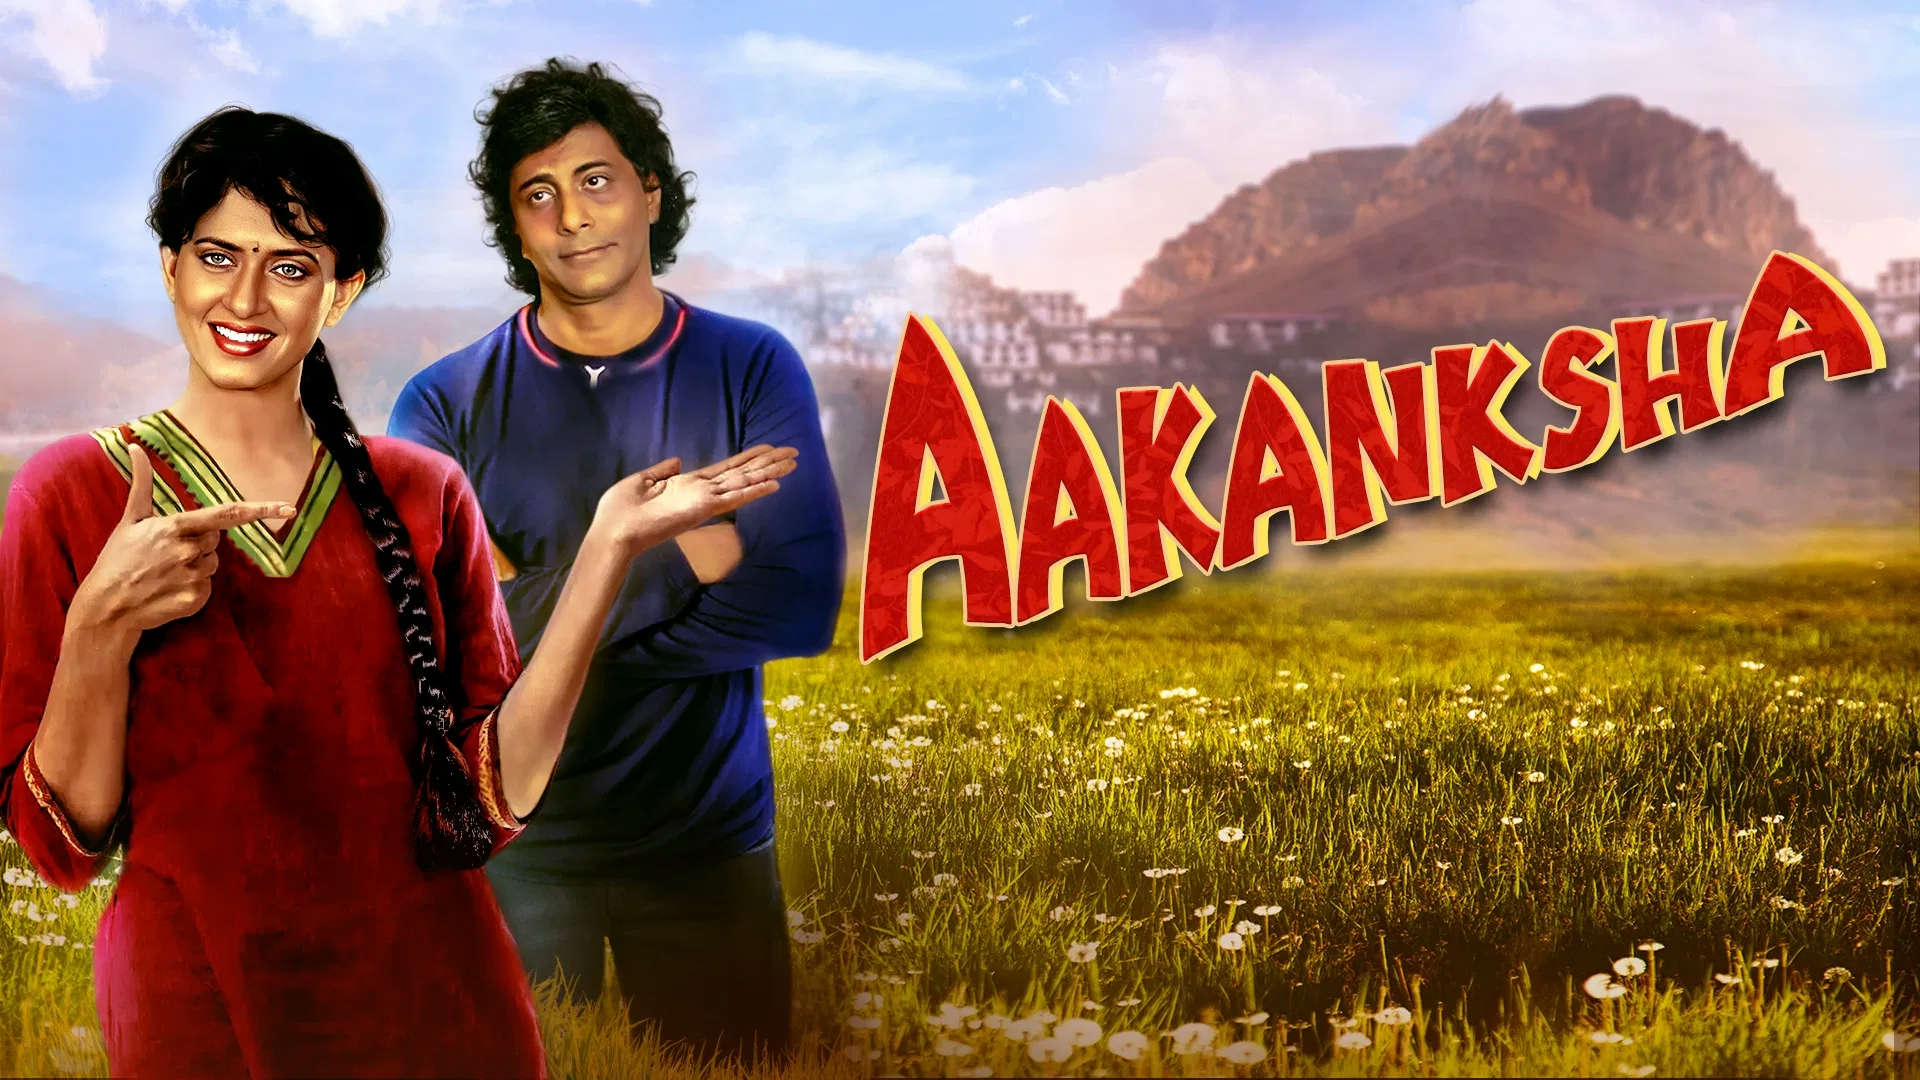 Aakanksha